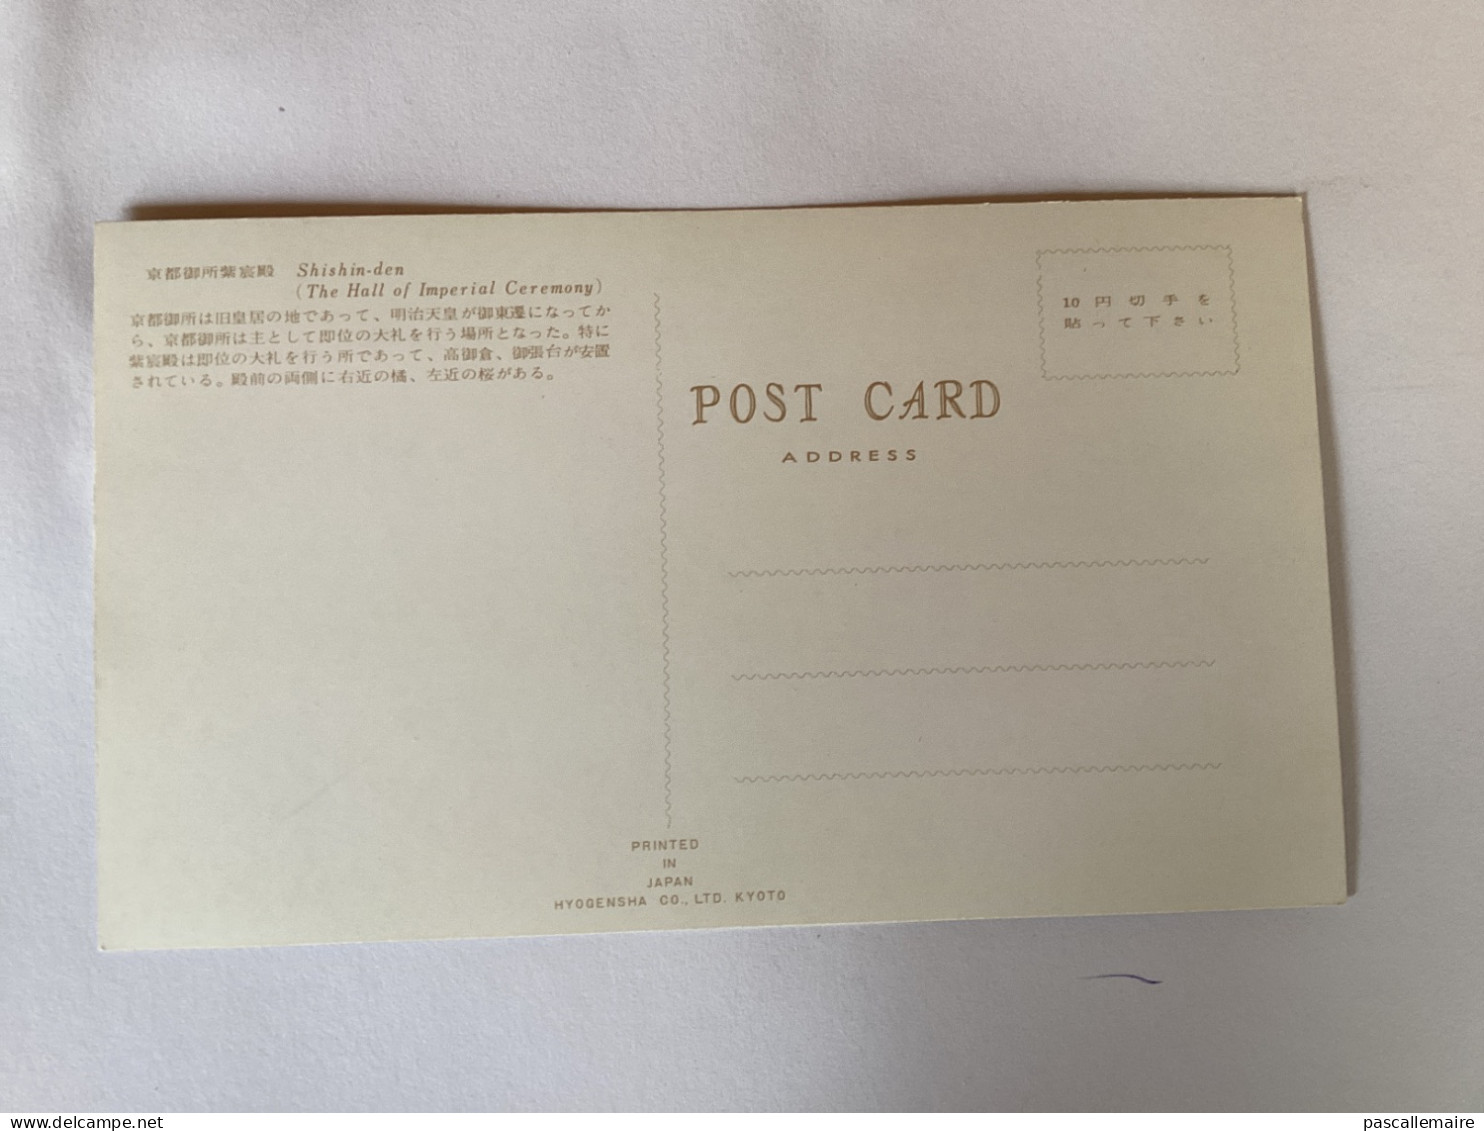 8 cartes postales kyoto année 1960